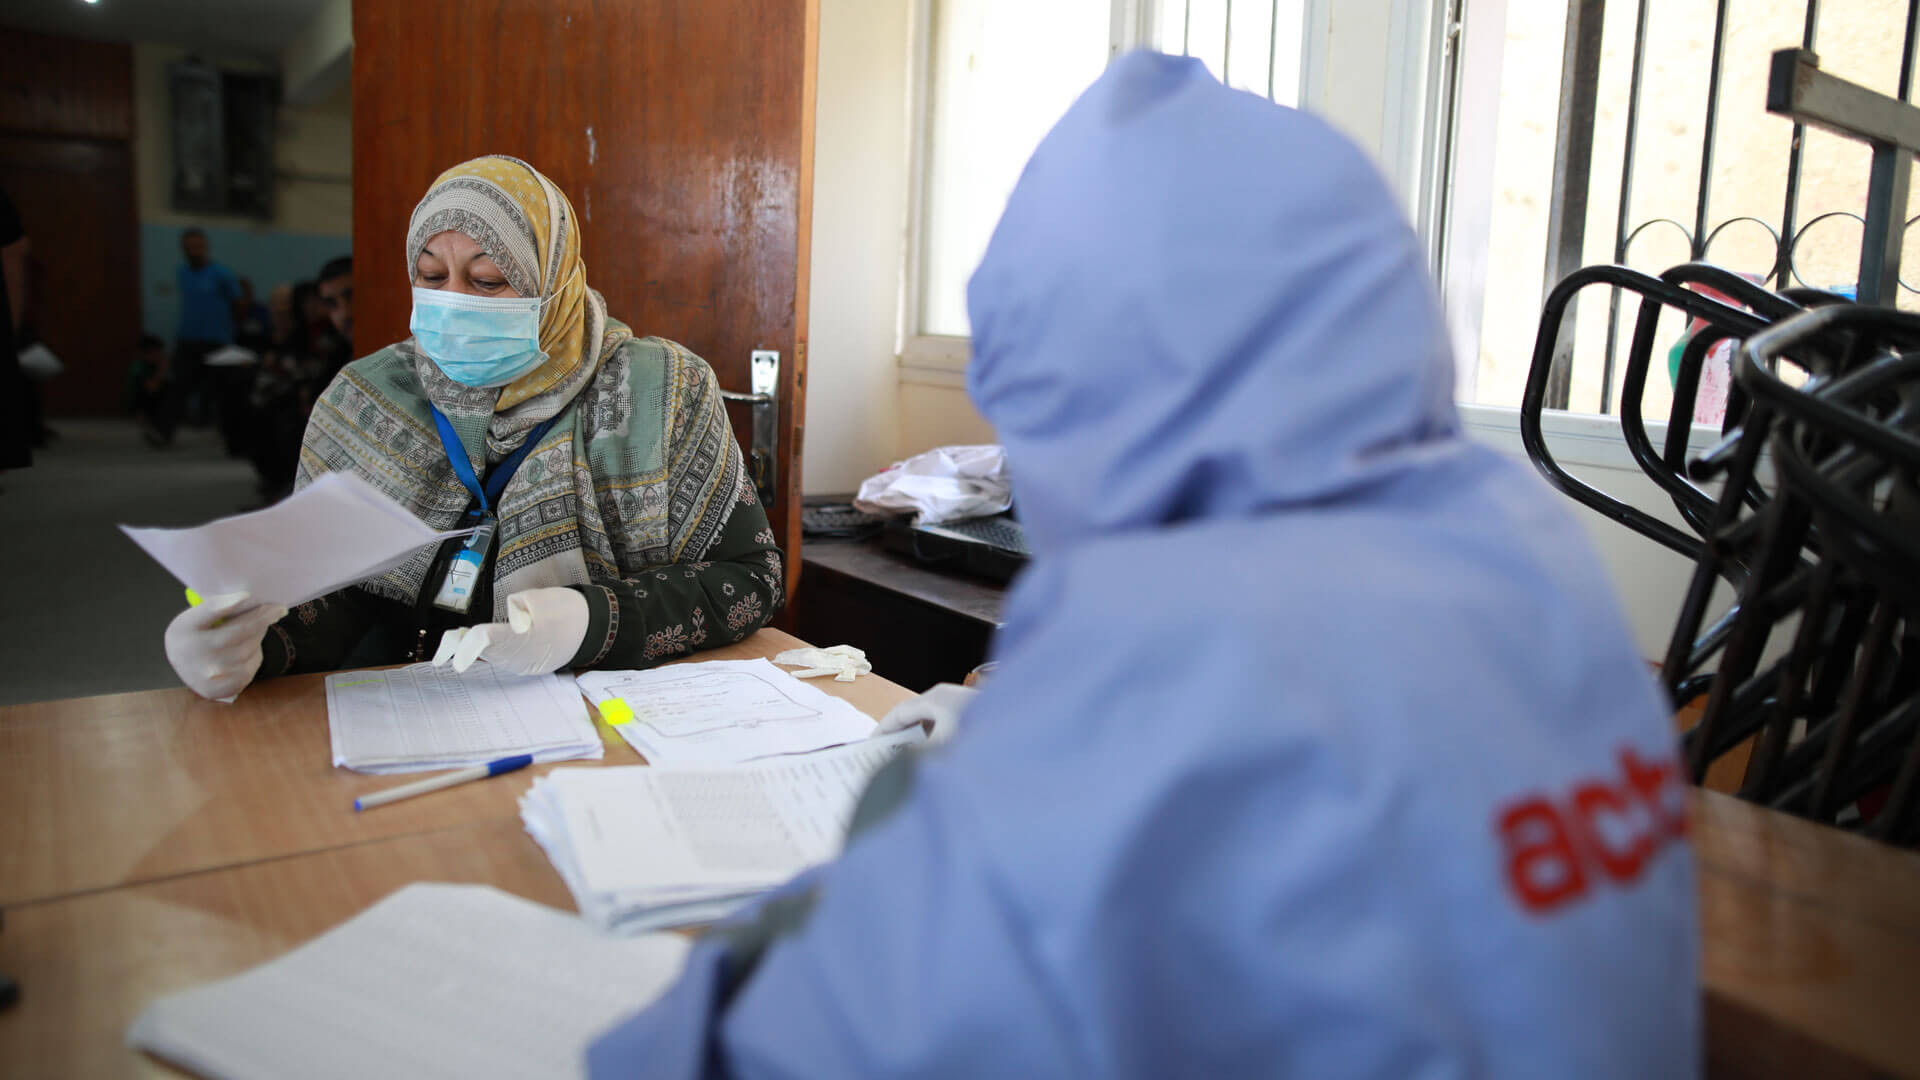 No Território Ocupado da Palestina, a Wefaq Society recebeu 700% mais pedidos de aconselhamento individual e assessoria jurídica durante a pandemia. Foto: ActionAid